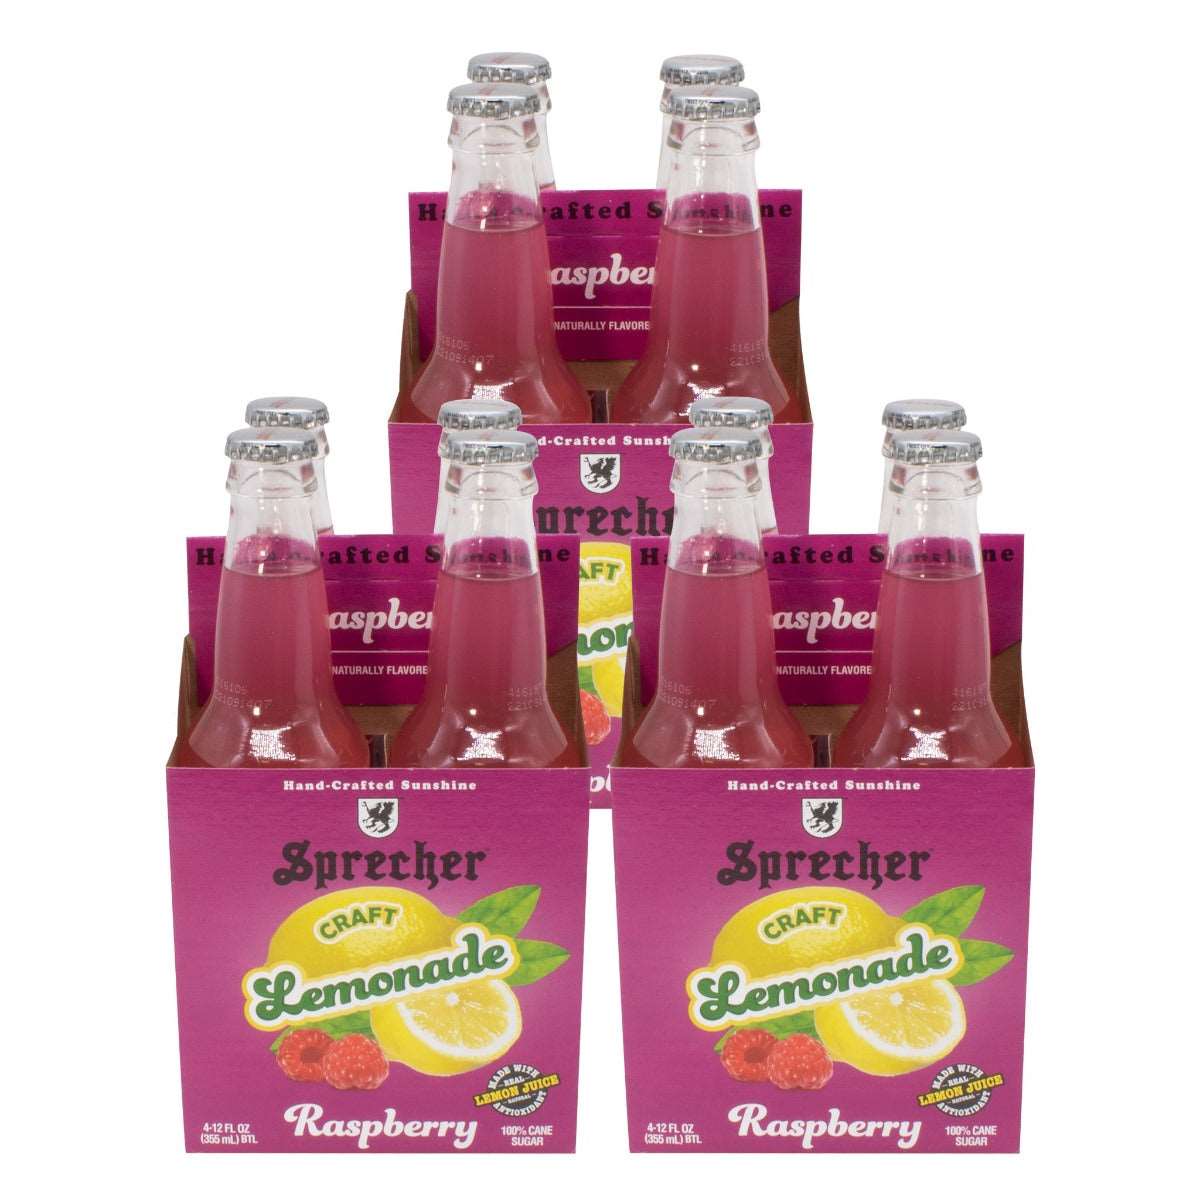 3 4-packs of Sprecher Raspberry Lemonade